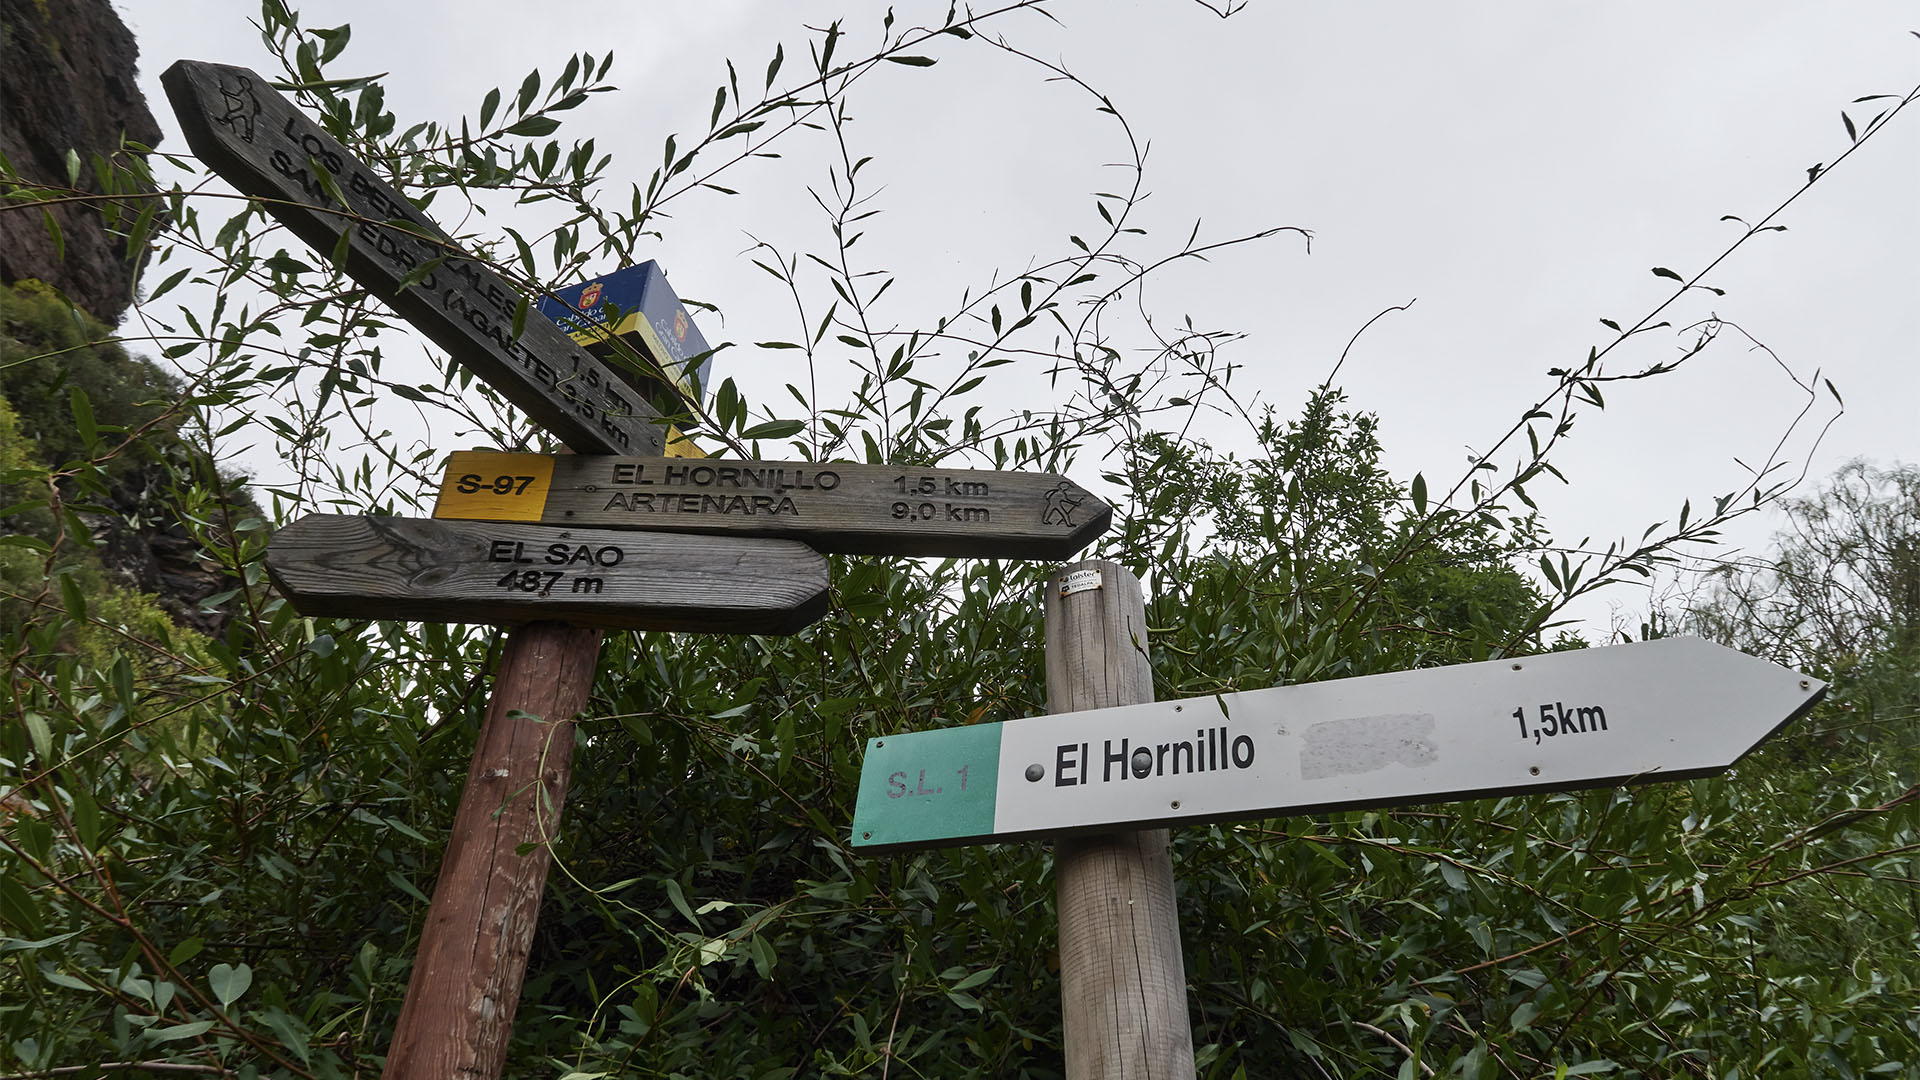 Der Wanderweg Sendero S-97 von "El Sao" nach "El Hornillo" Gran Canaria.